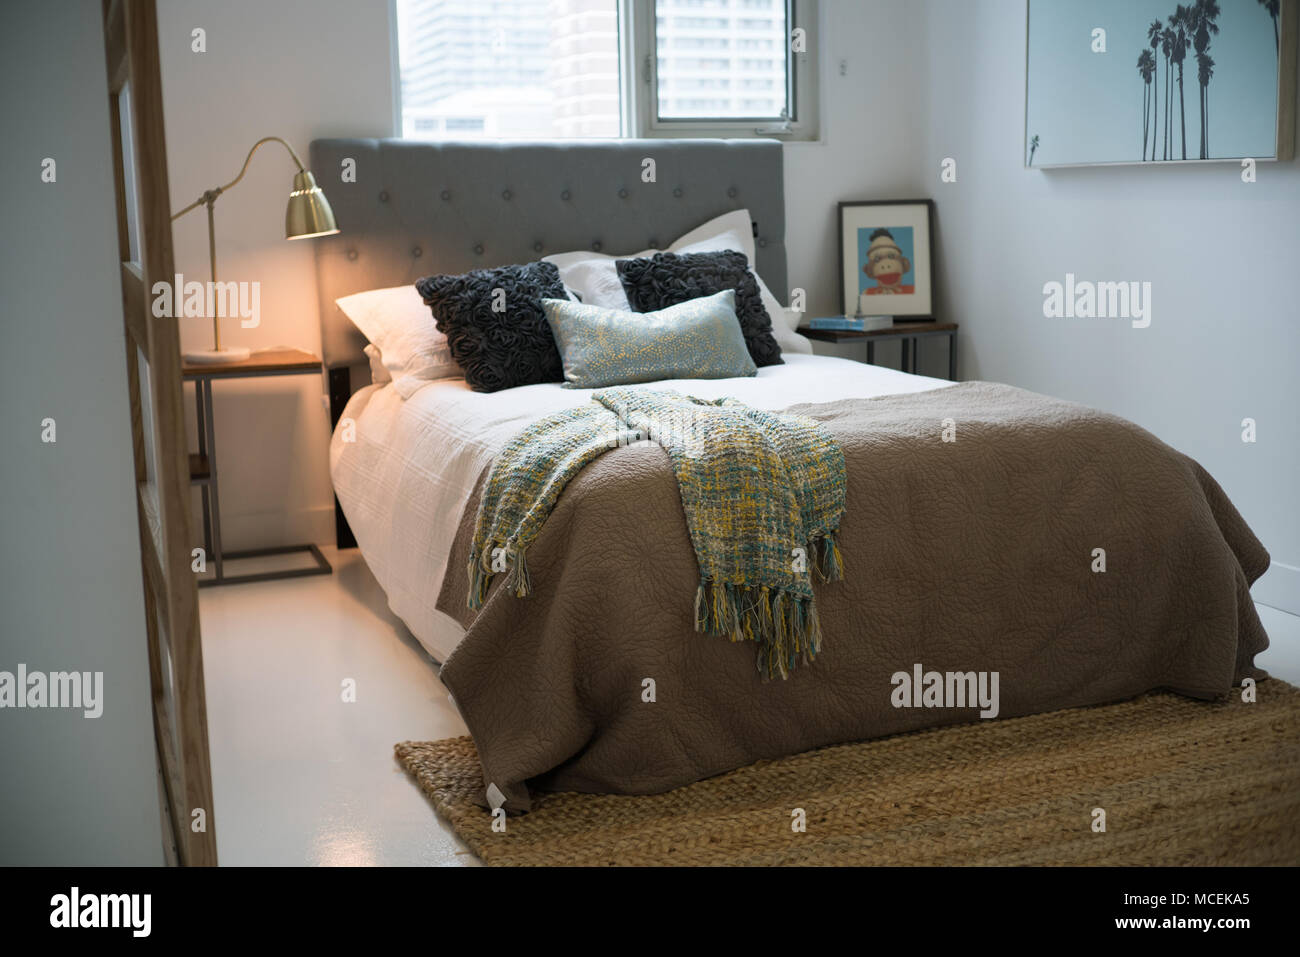 Interno della camera da letto accogliente in design moderno Foto Stock